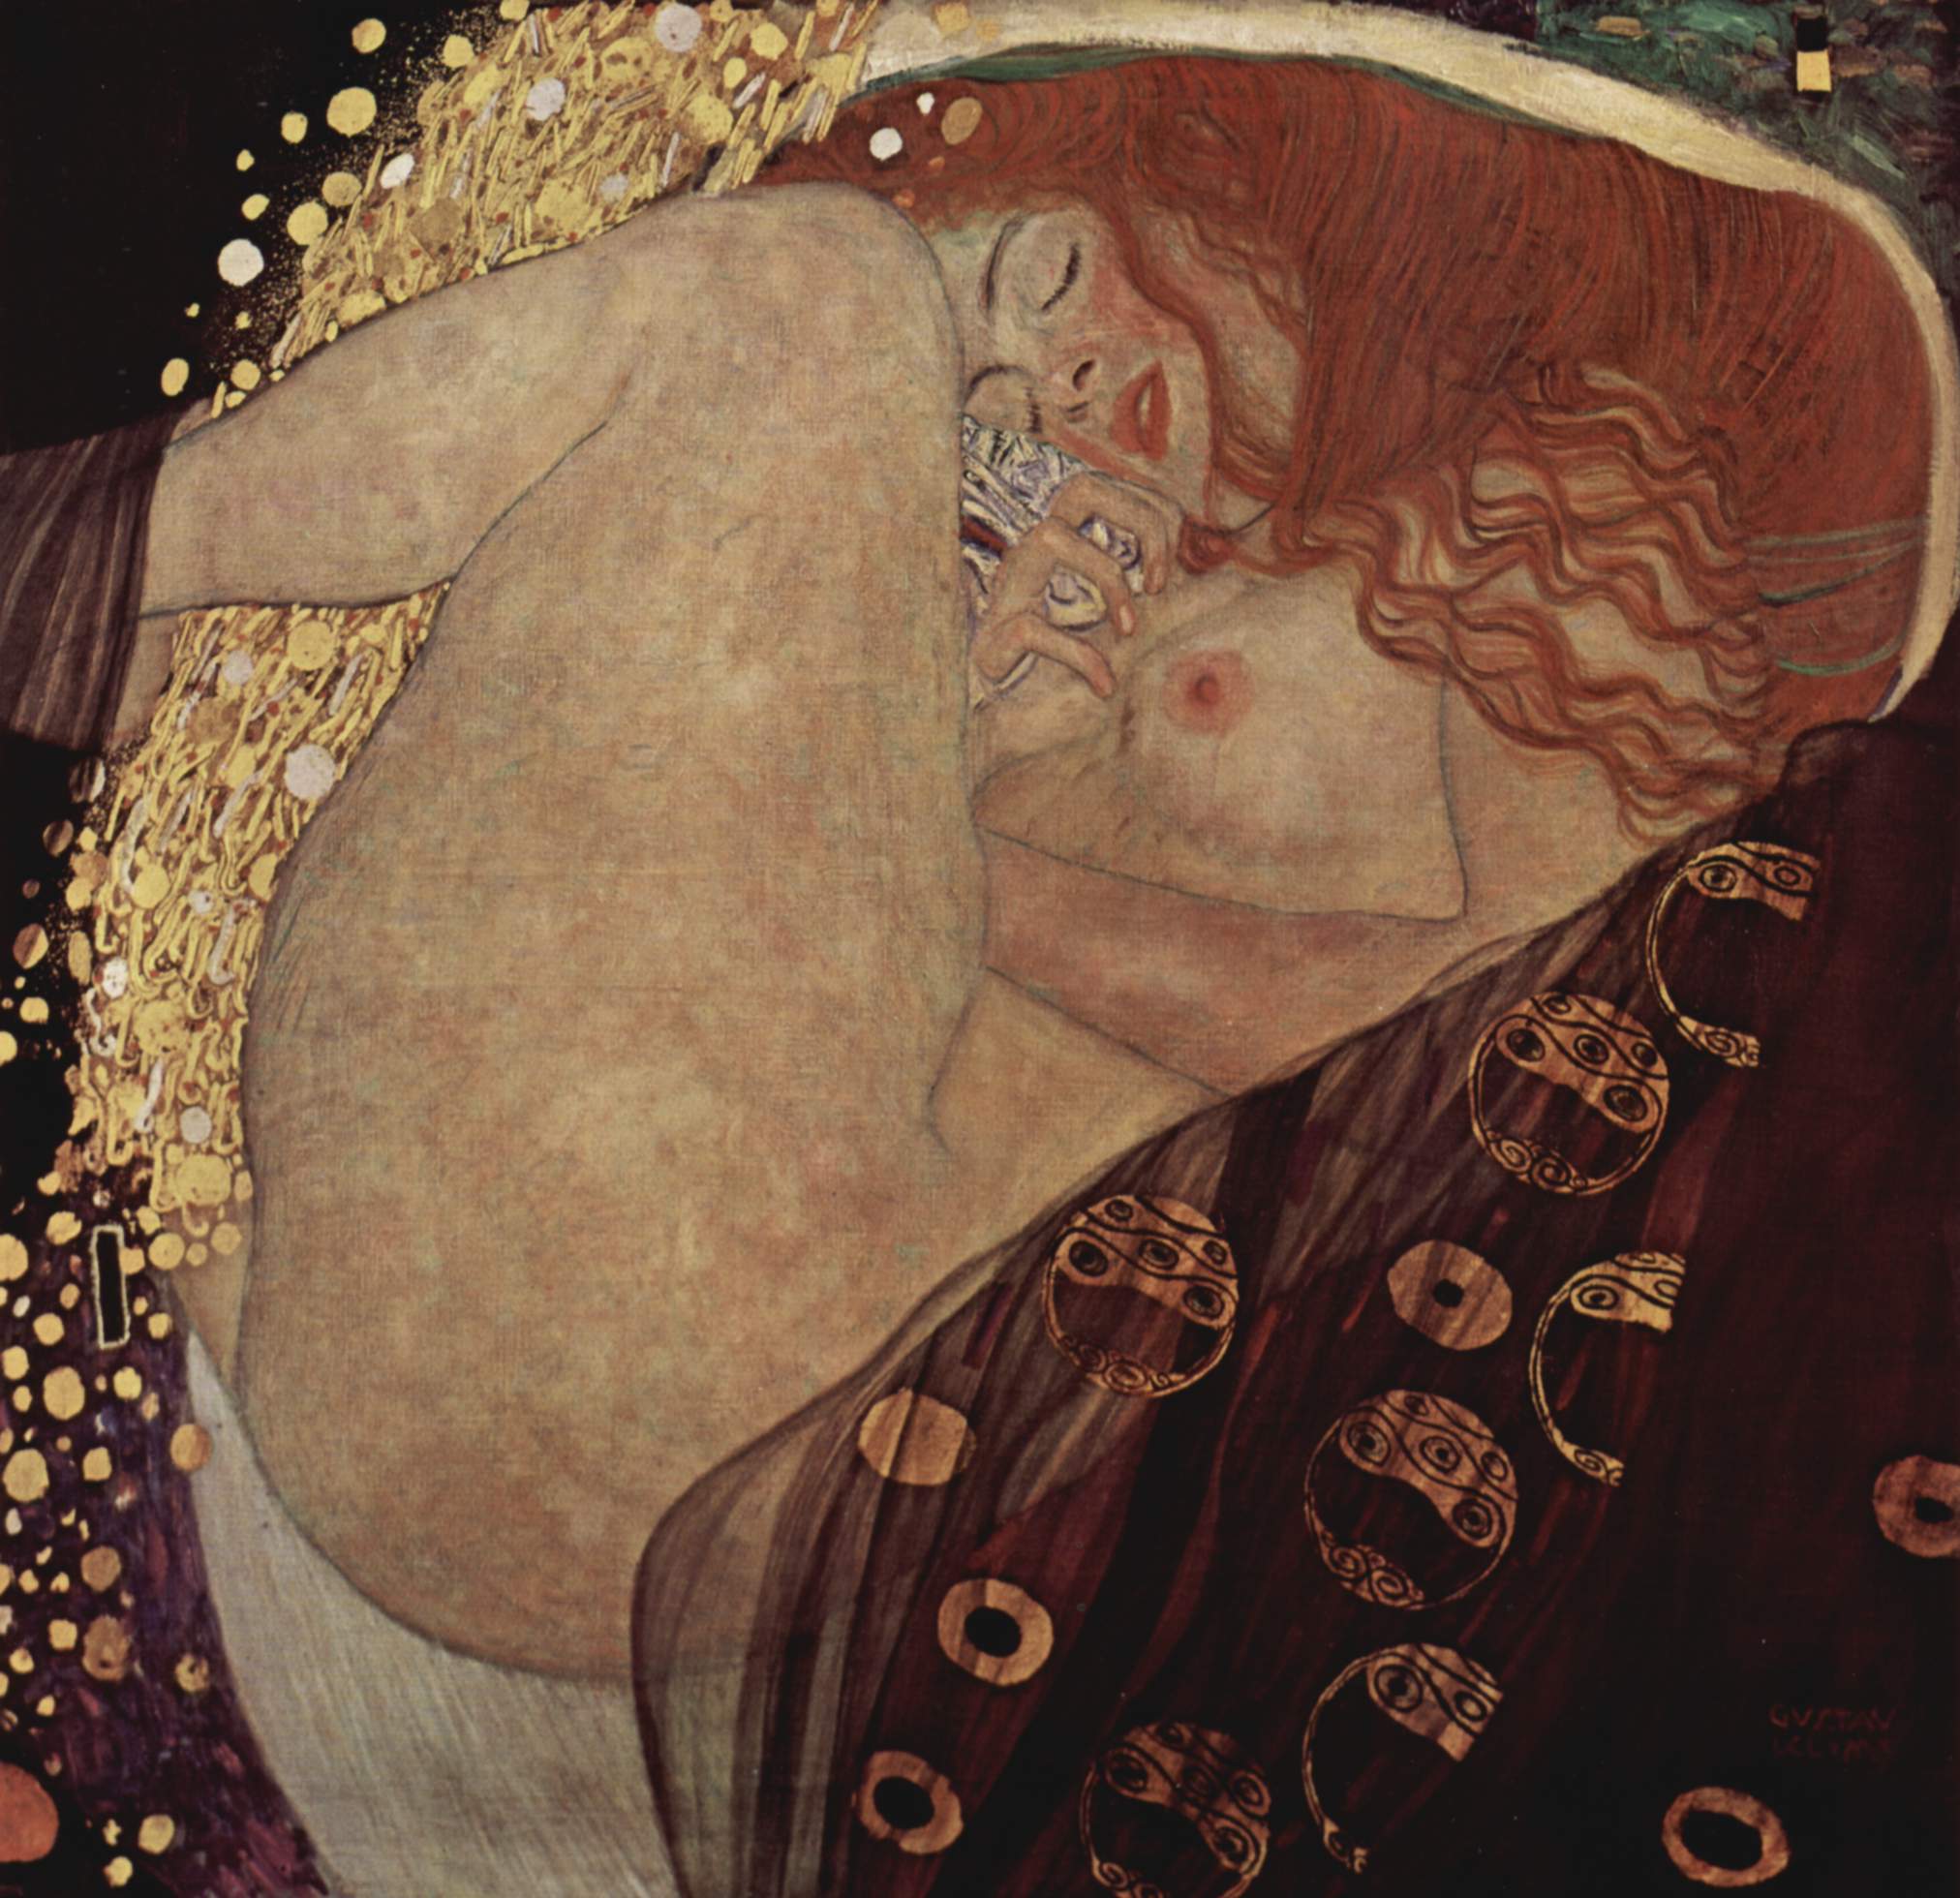 Dánae by Gustav Klimt - 1908 Colección privada